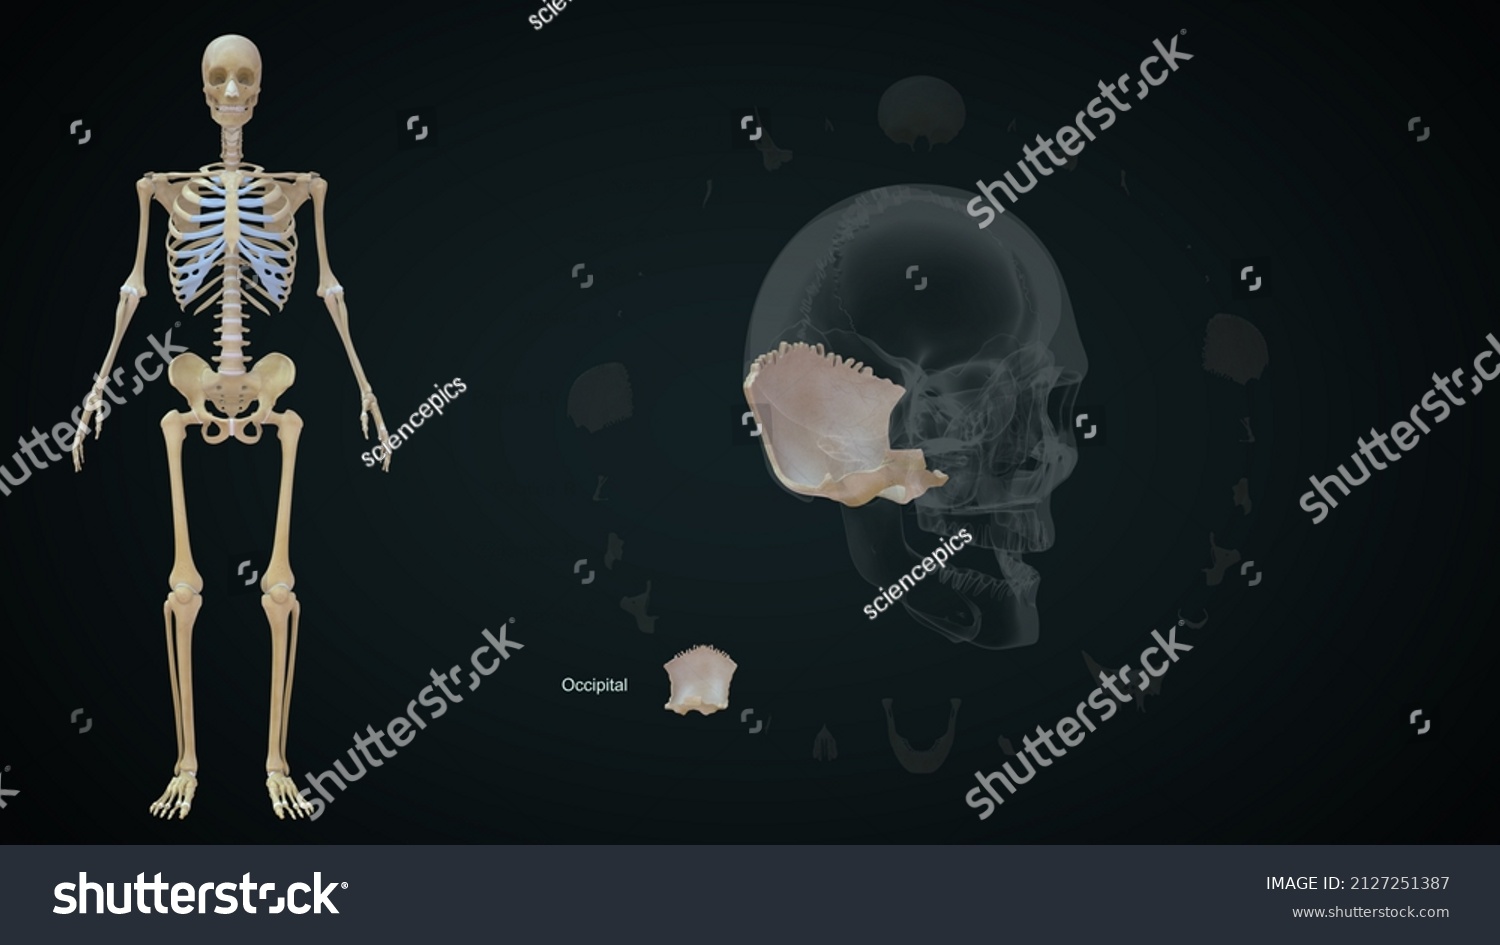 Human Skull Bones Occipital Anatomy 3d Stock Illustration 2127251387 Shutterstock 0779